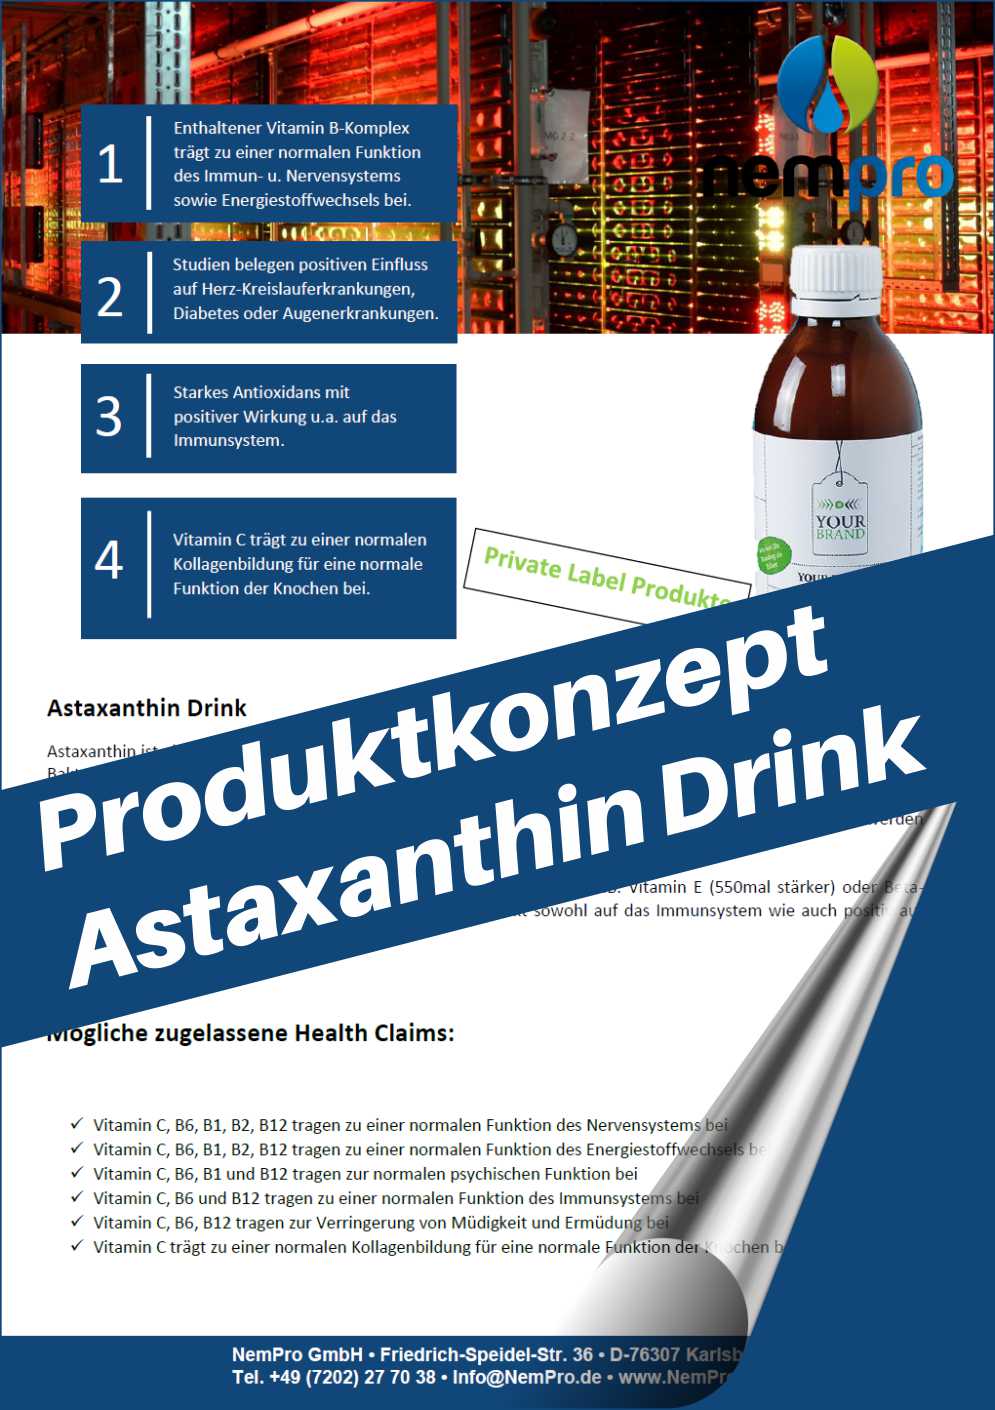 Mehr über den Artikel erfahren Astaxanthin Drink